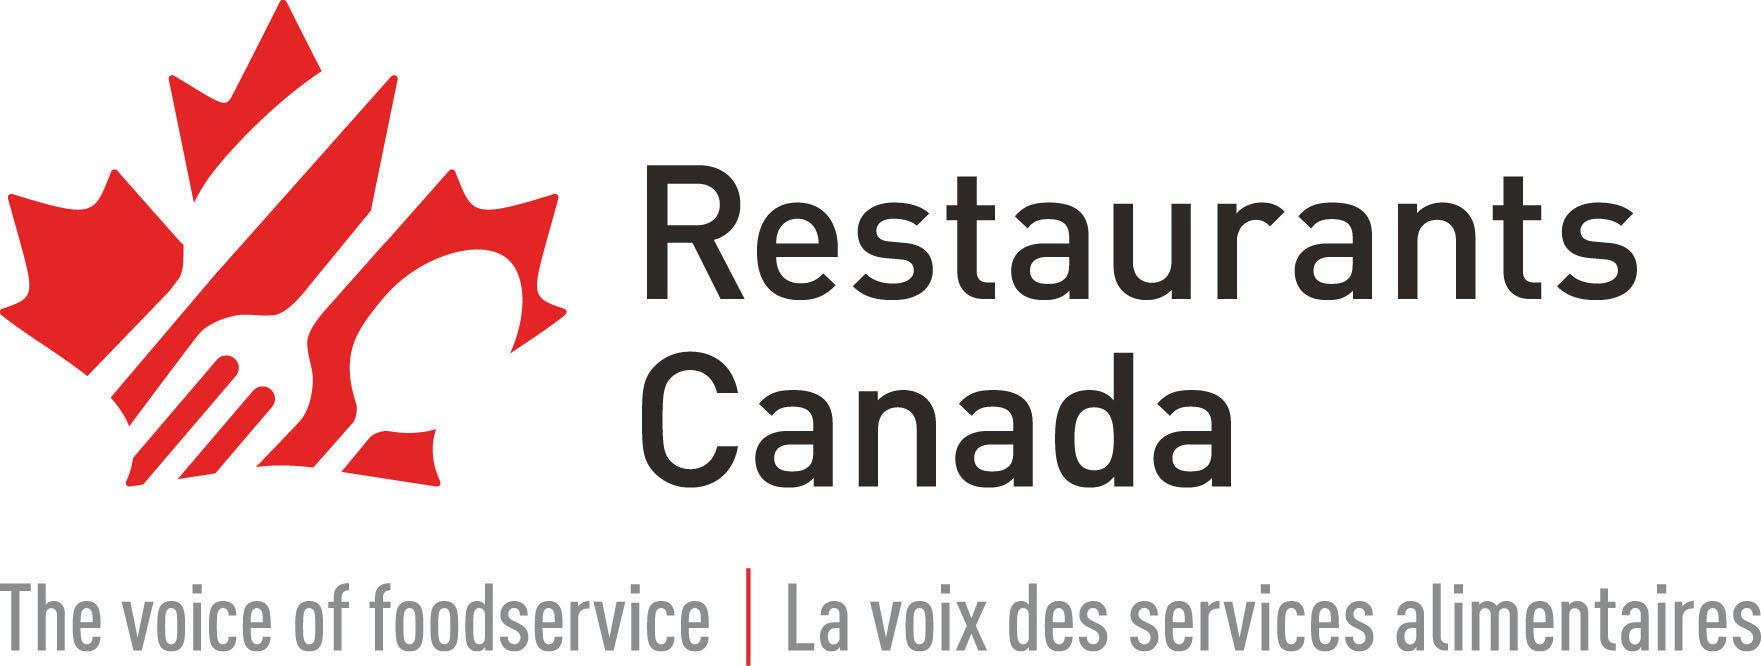 Restaurants Canada’s